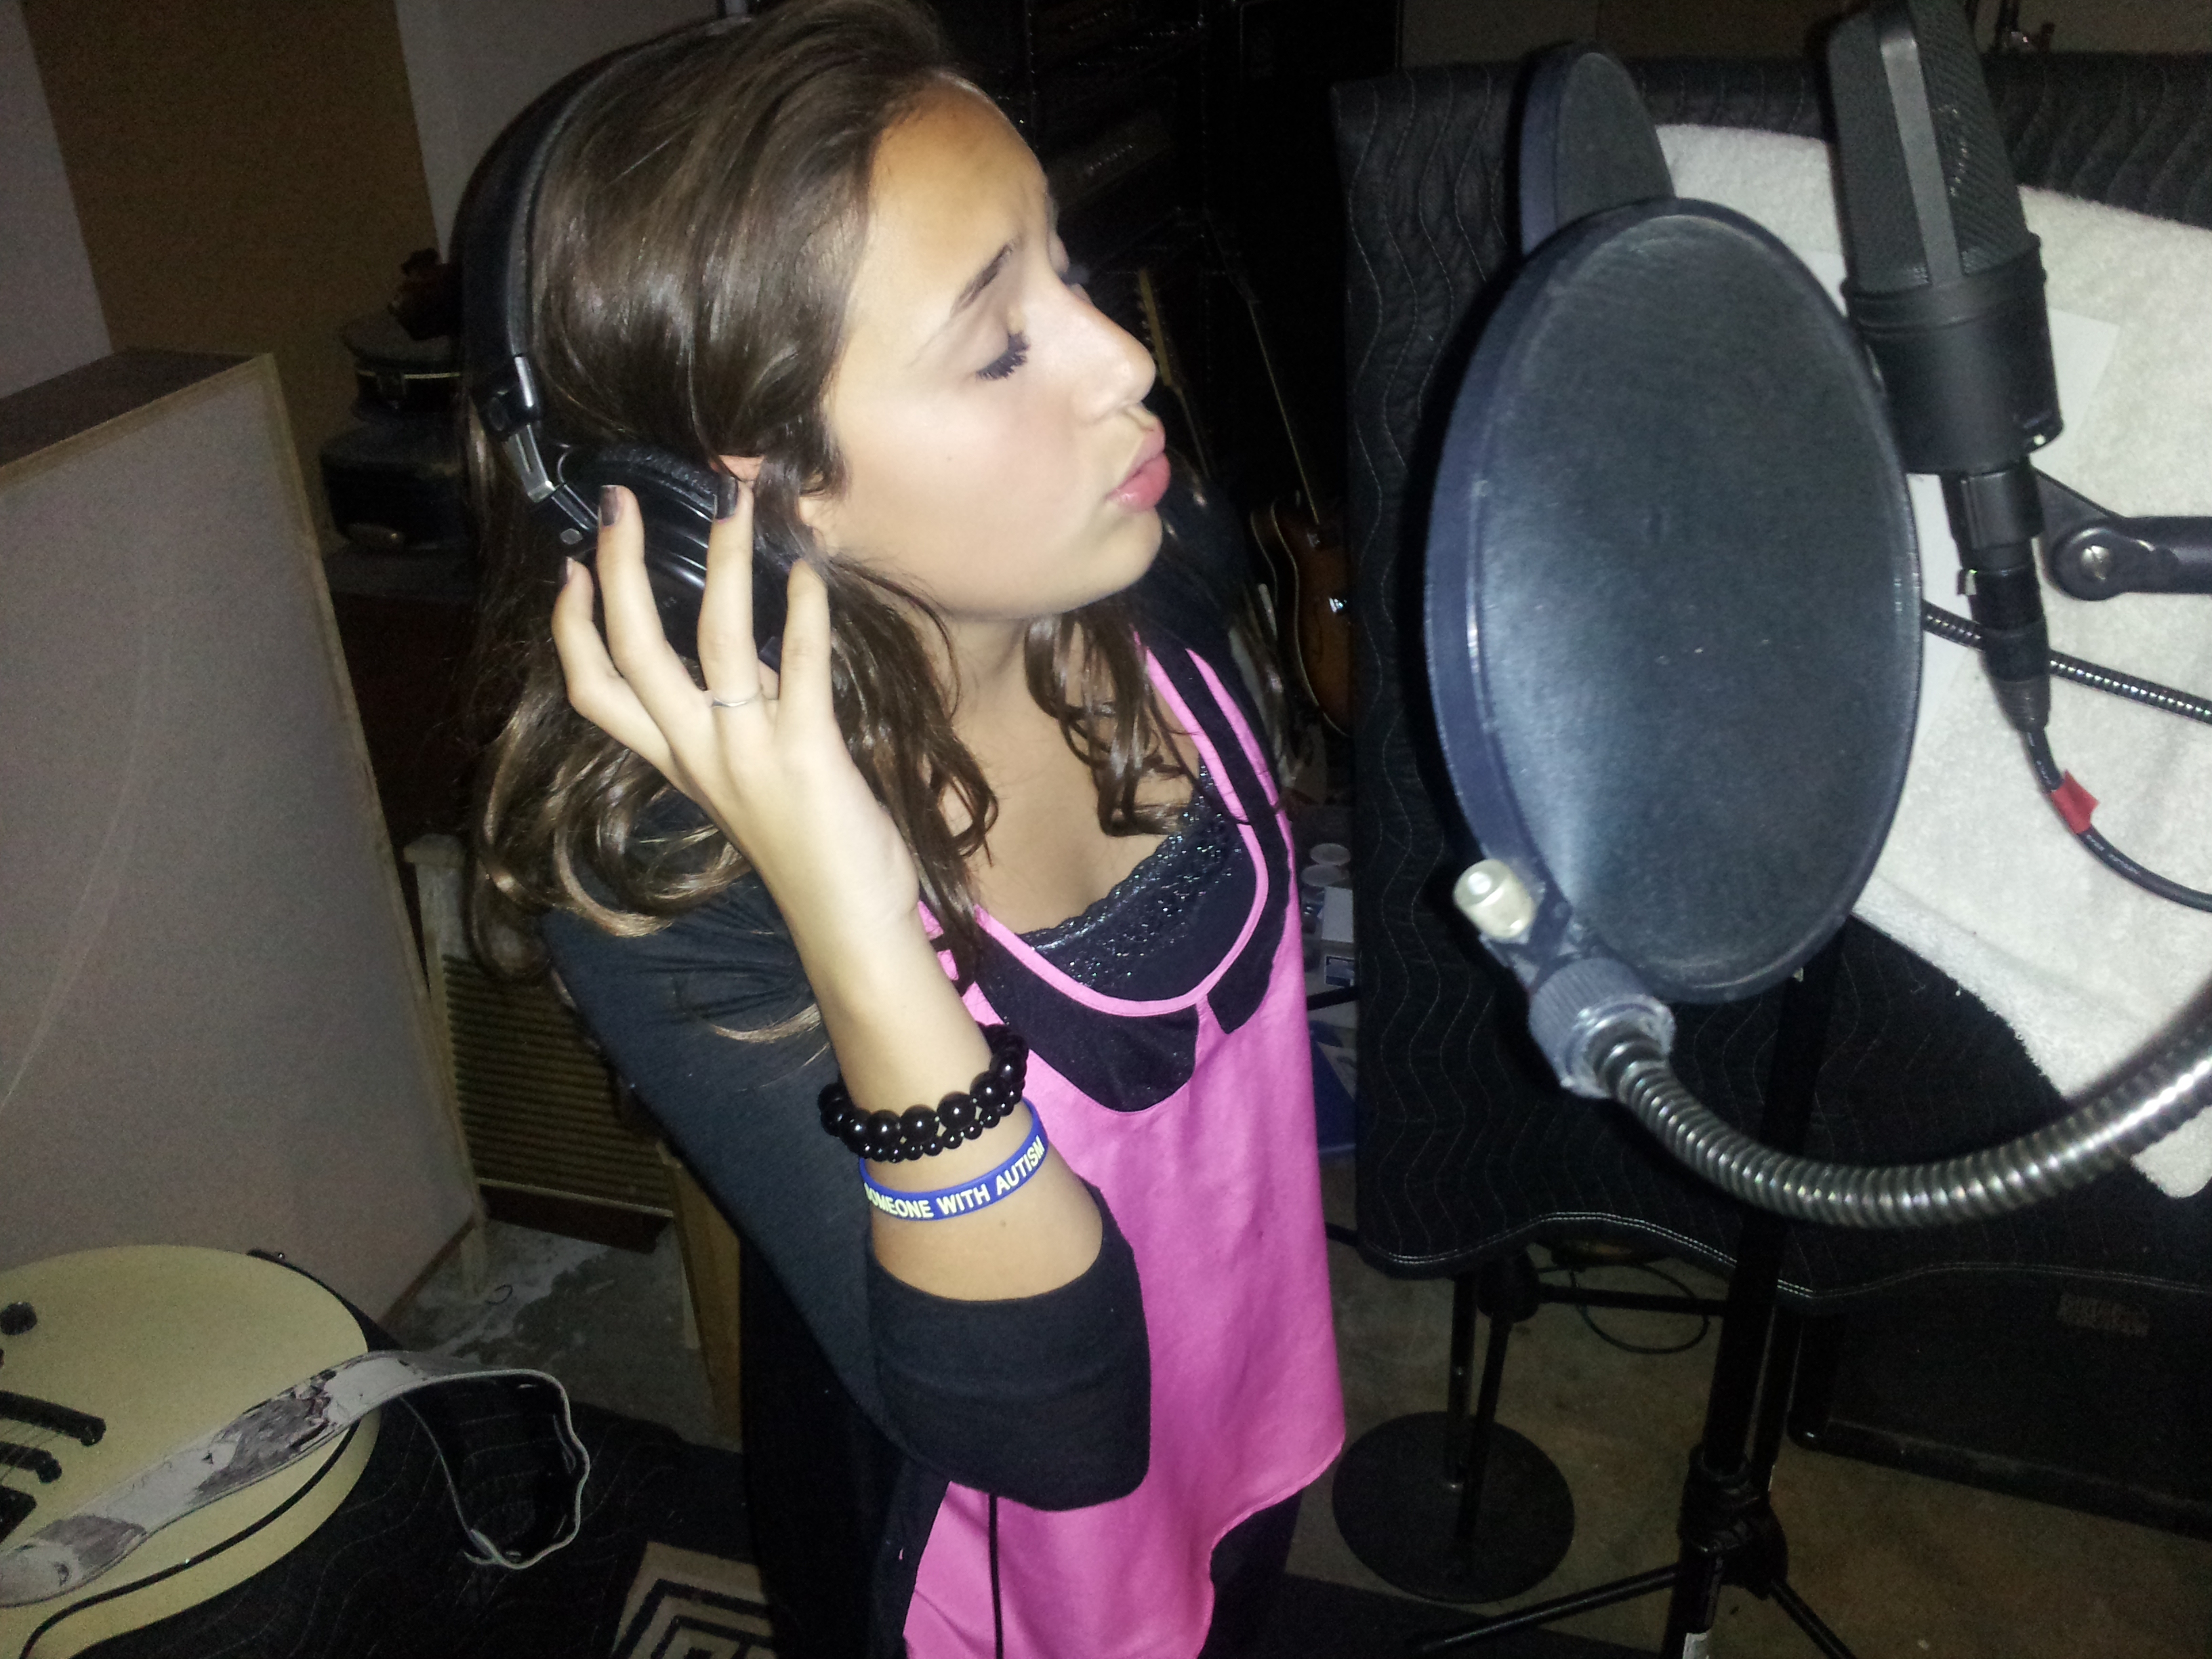 Ariana recording a song.